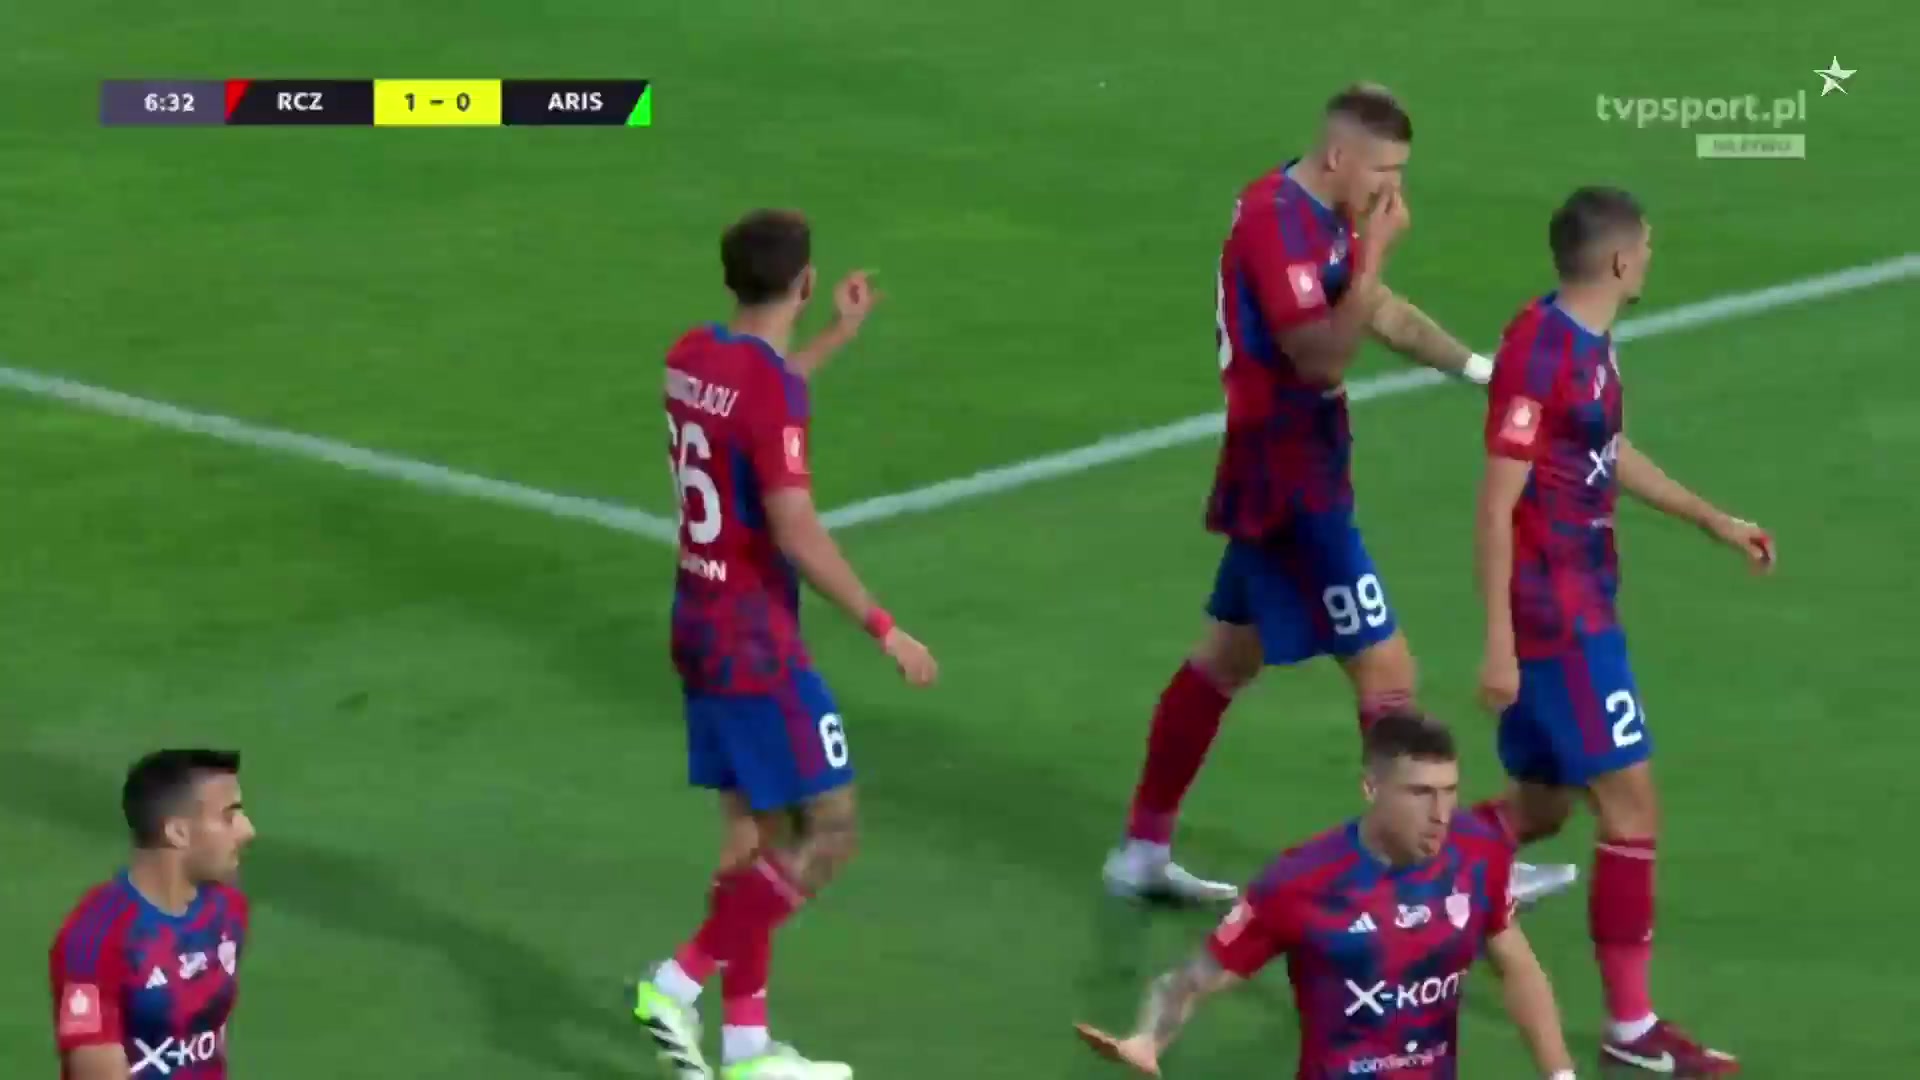 UEFA CL Rakow Czestochowa Vs Aris Limassol  Goal in 6 min, Score 1:0